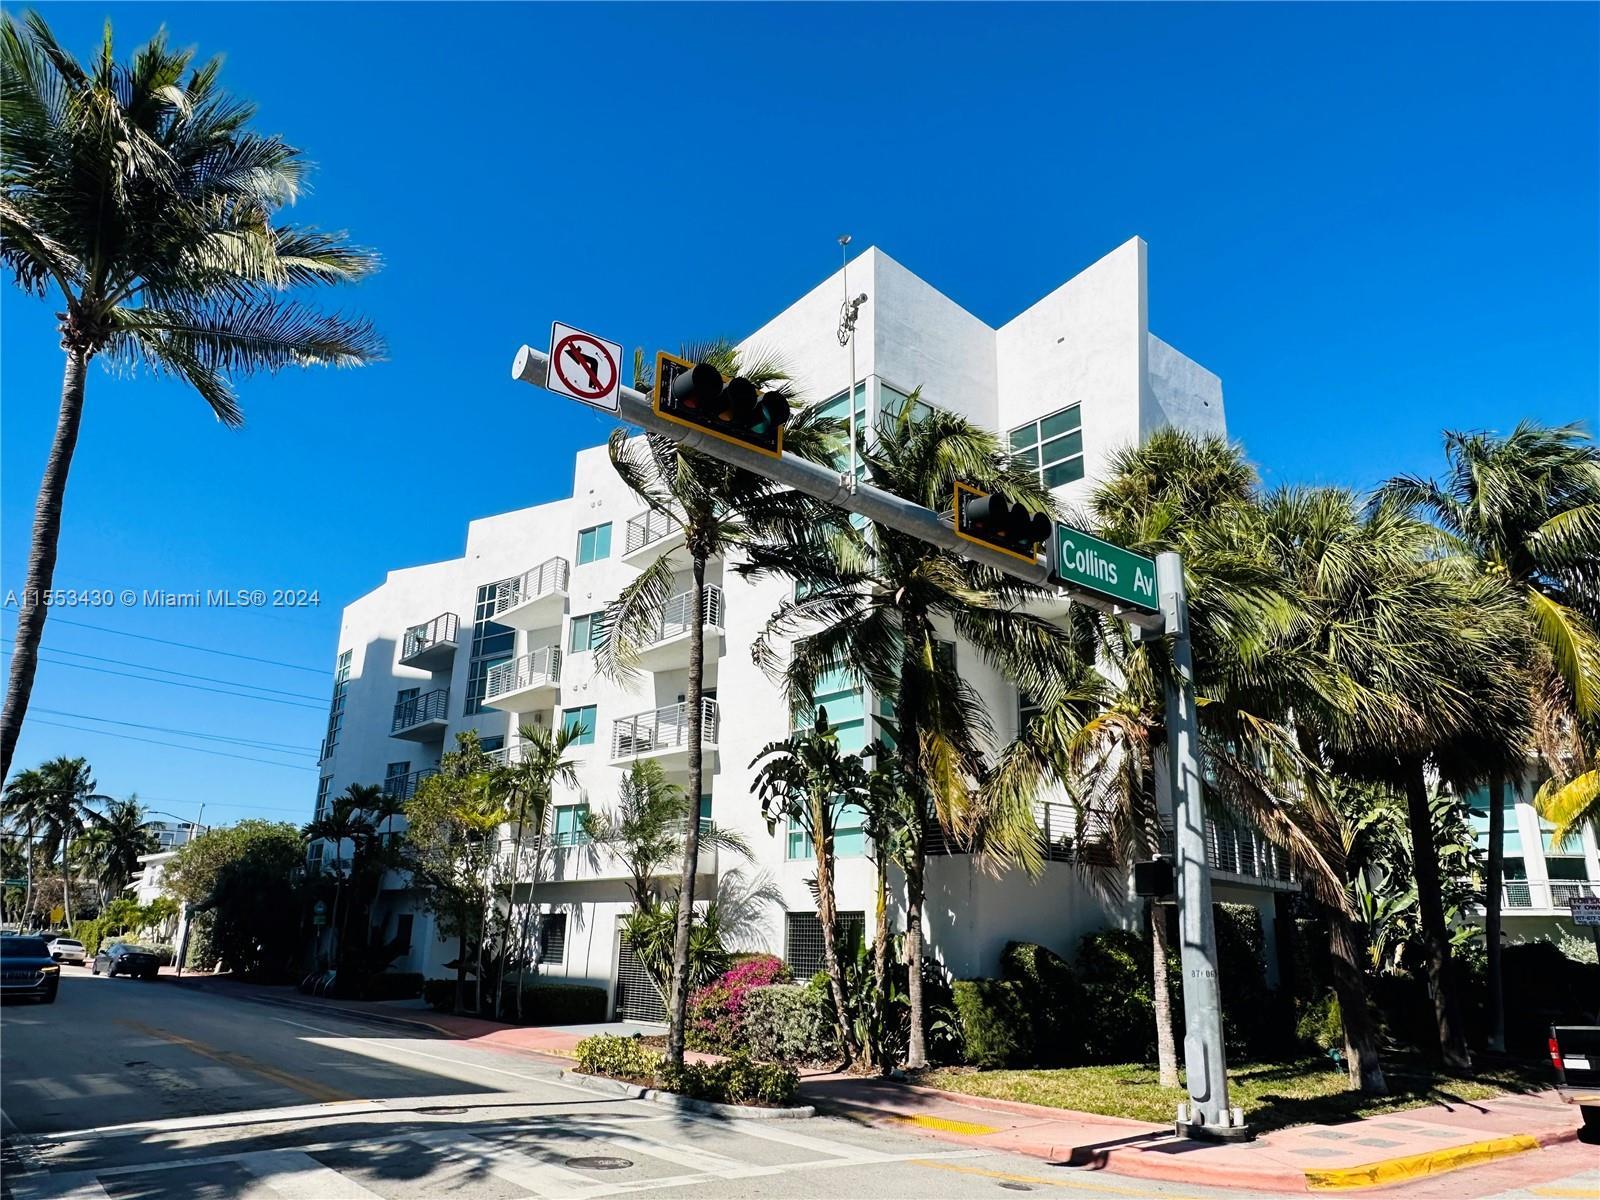 Photo of 7700 Collins Ave #1 in Miami Beach, FL